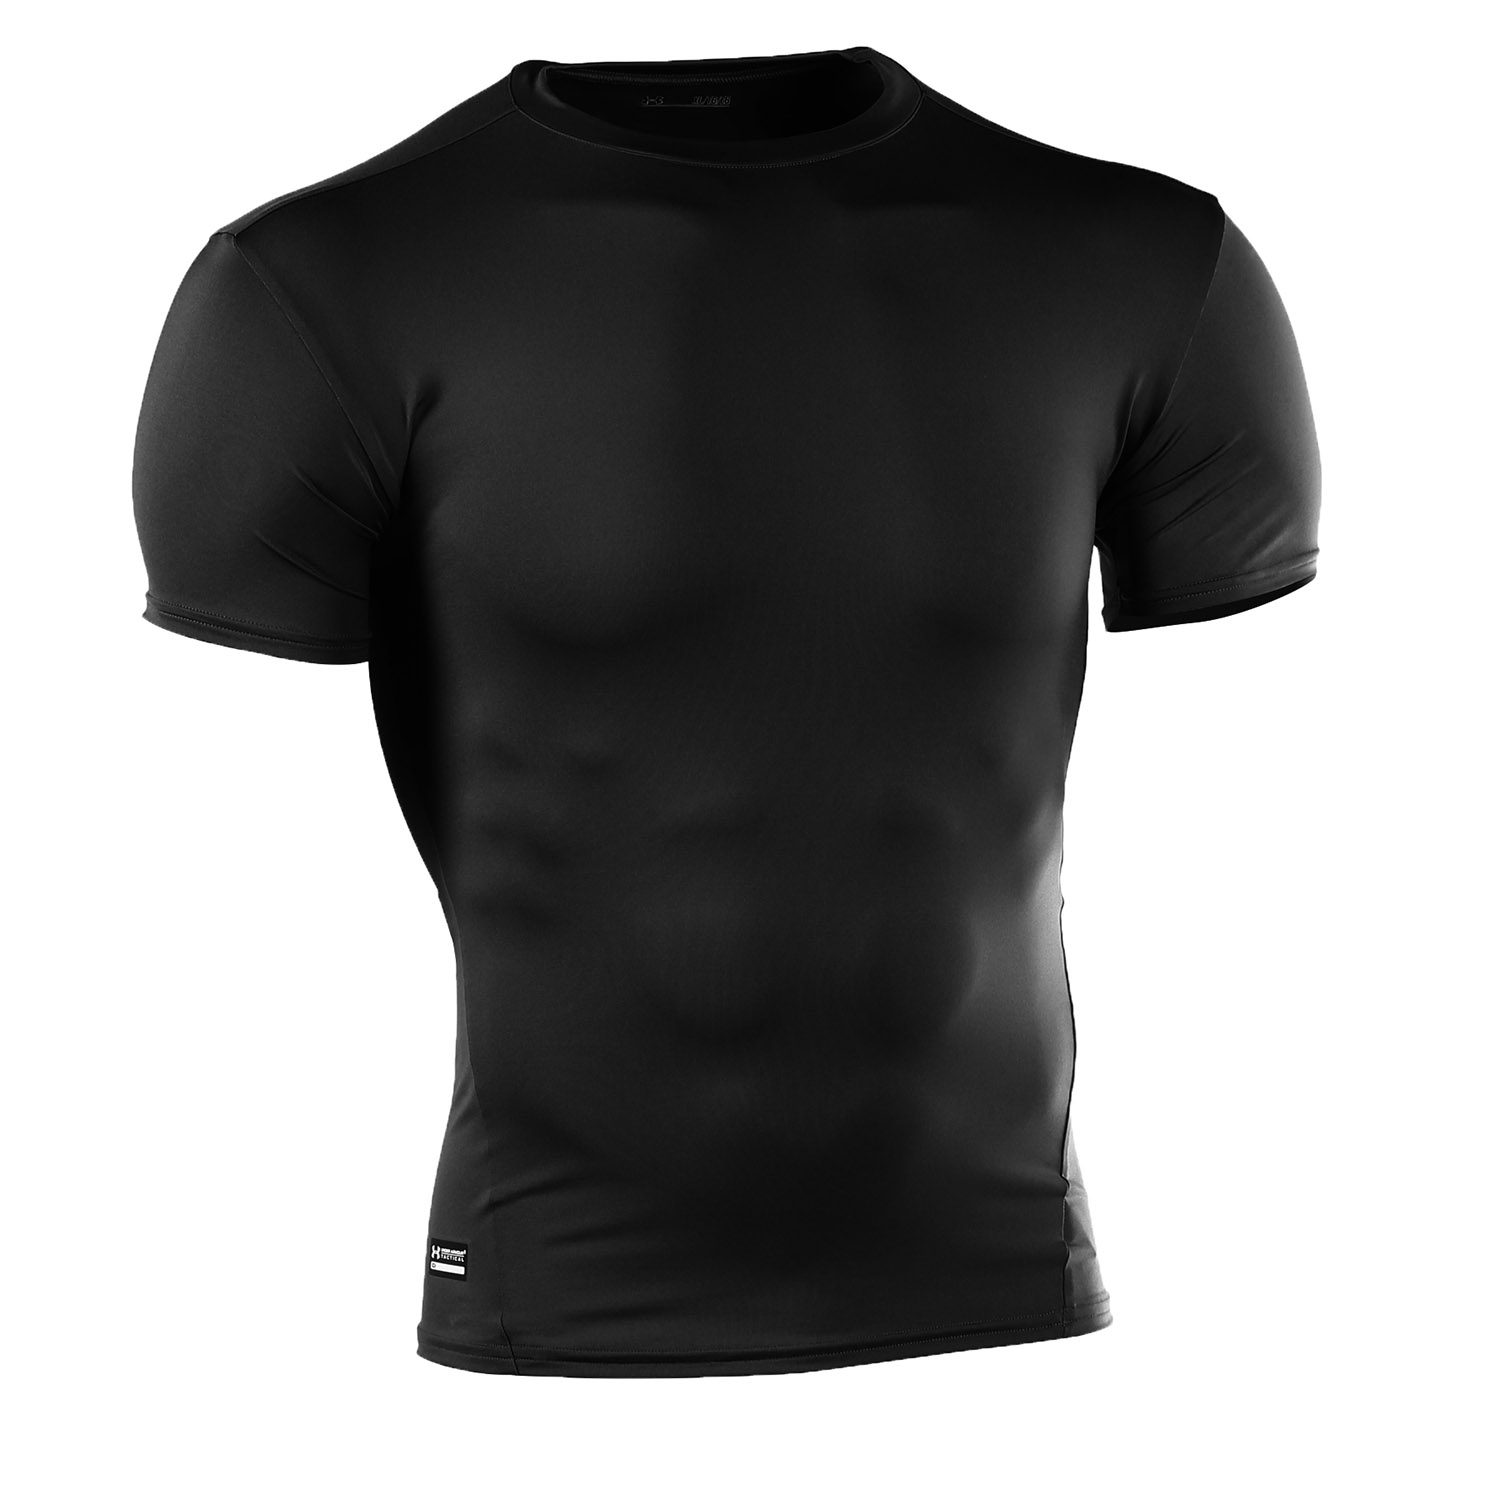 Under Armour Men's Tactical HeatGear Compression Shirt, Black